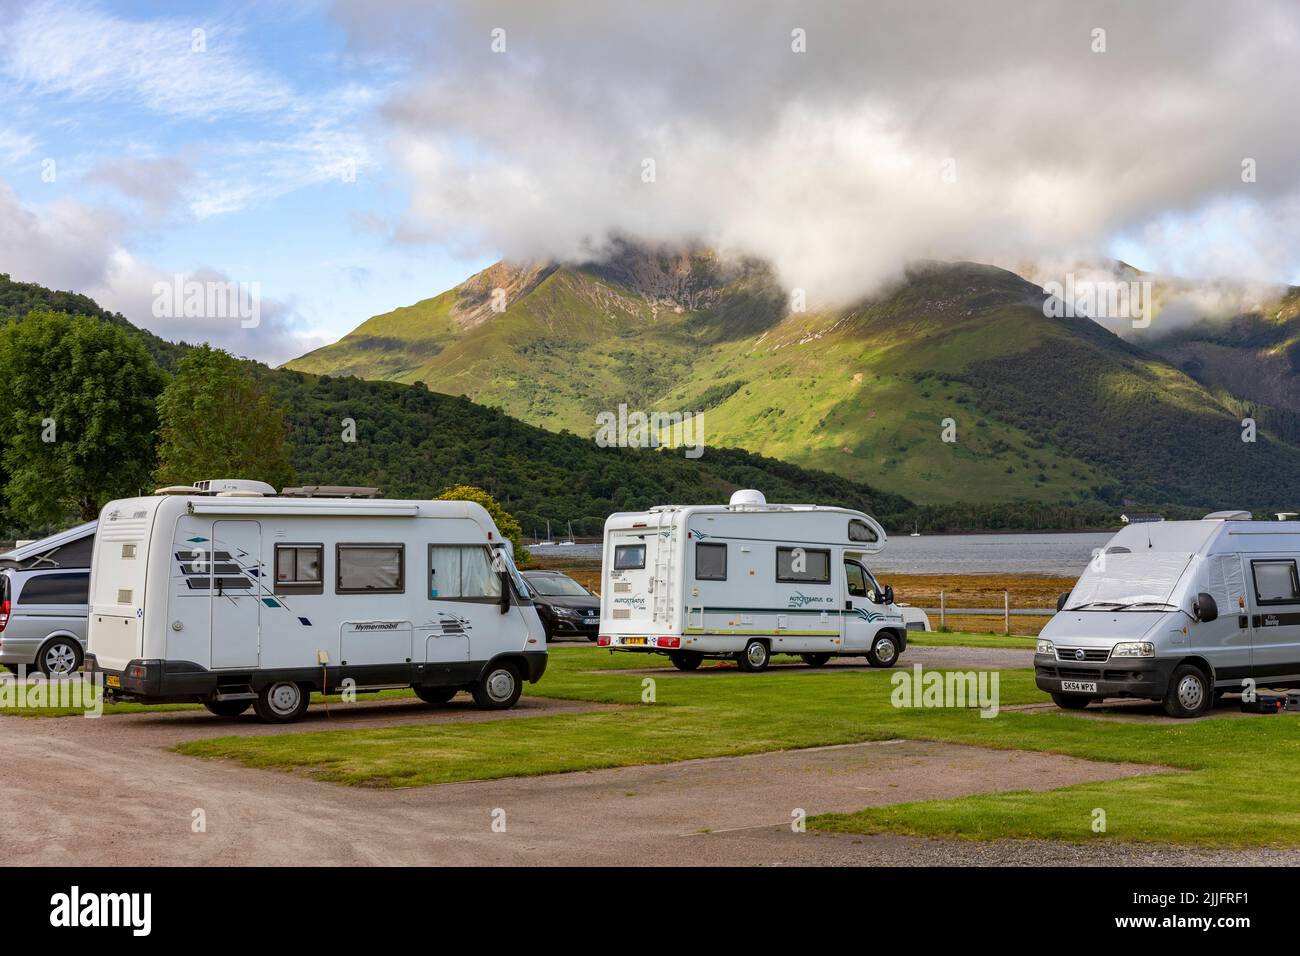 Glencoe nelle Highlands scozzesi e il parco di roulotte e camper di Invercoe con vista su Loch Leven, Argyll, Scozia, Regno Unito, Europa Foto Stock